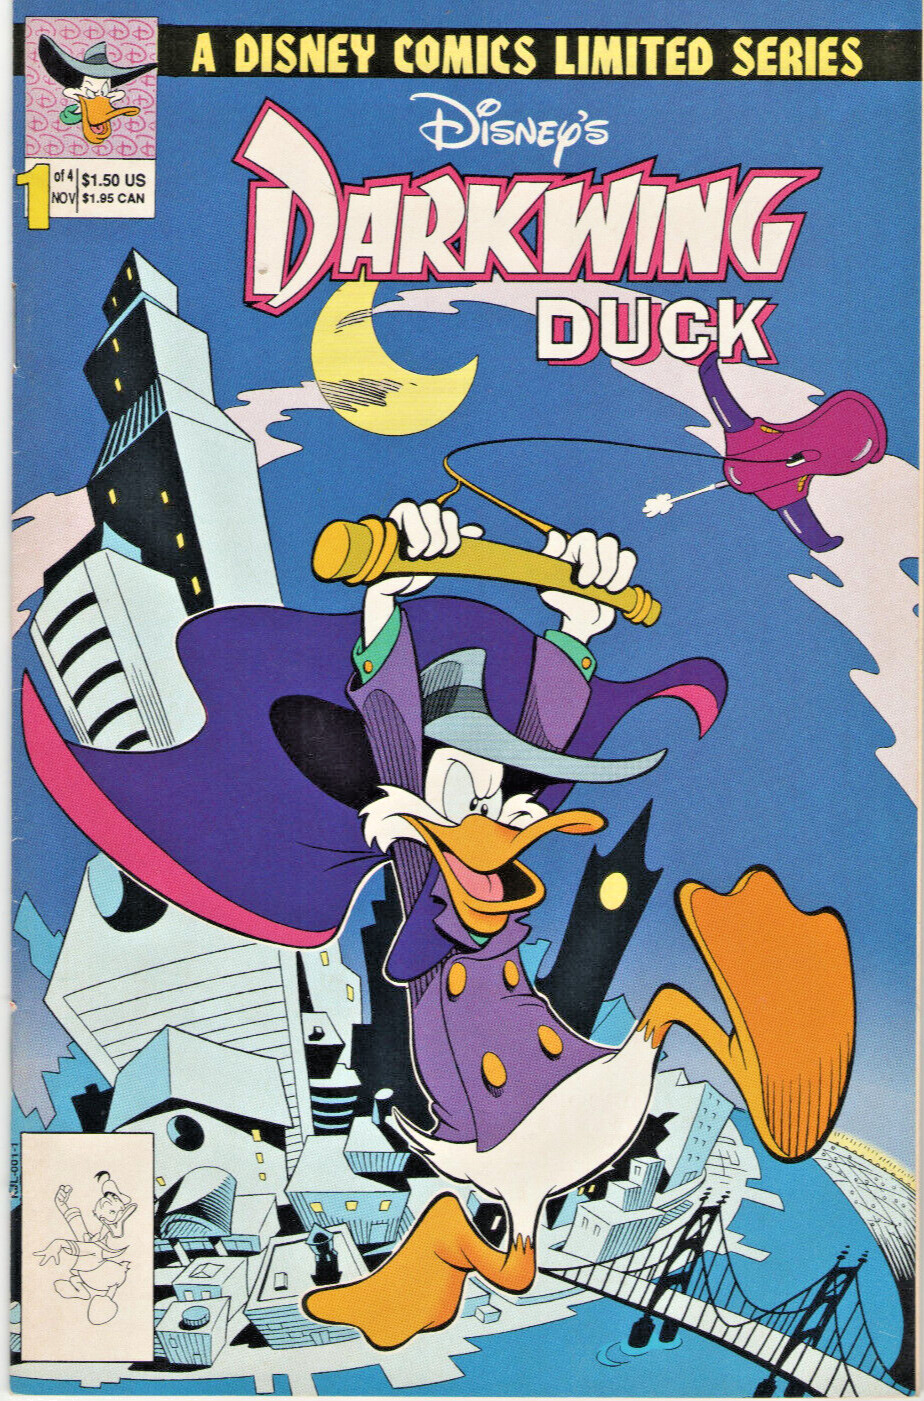 VINTAGE NOV 1991 DARKWING DUCK #1 DISNEY COMICS LIMITED SERIES COMIC BOOK